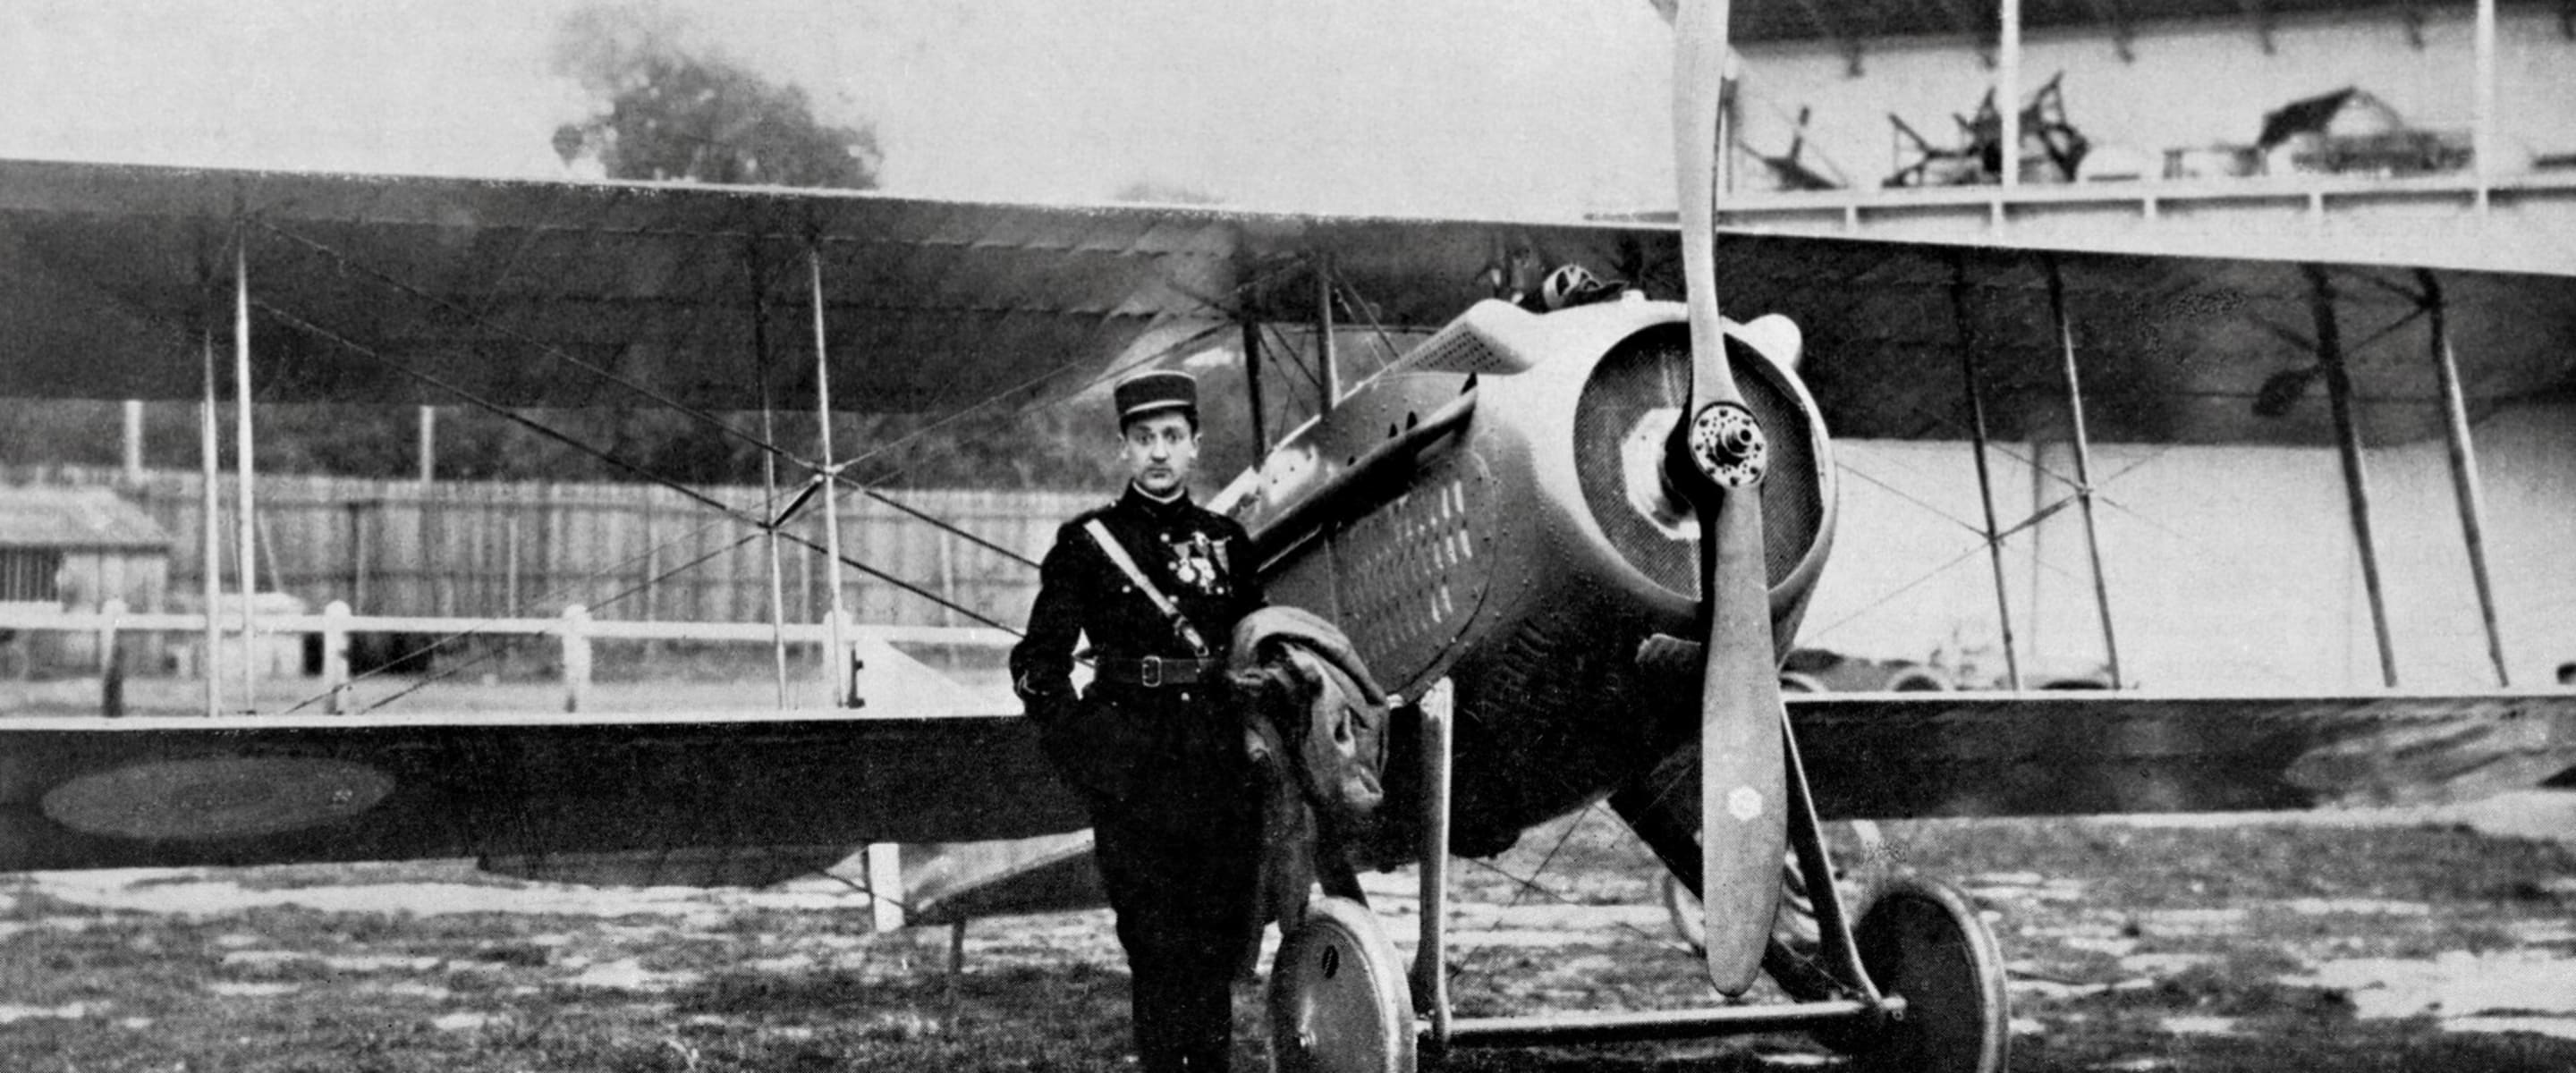 L'as de la première guerre mondiale, Georges Guynemer, devant un Spad VII équipé d'une hélice Éclair, première réalisation aéronautique de Marcel Dassault (1917).